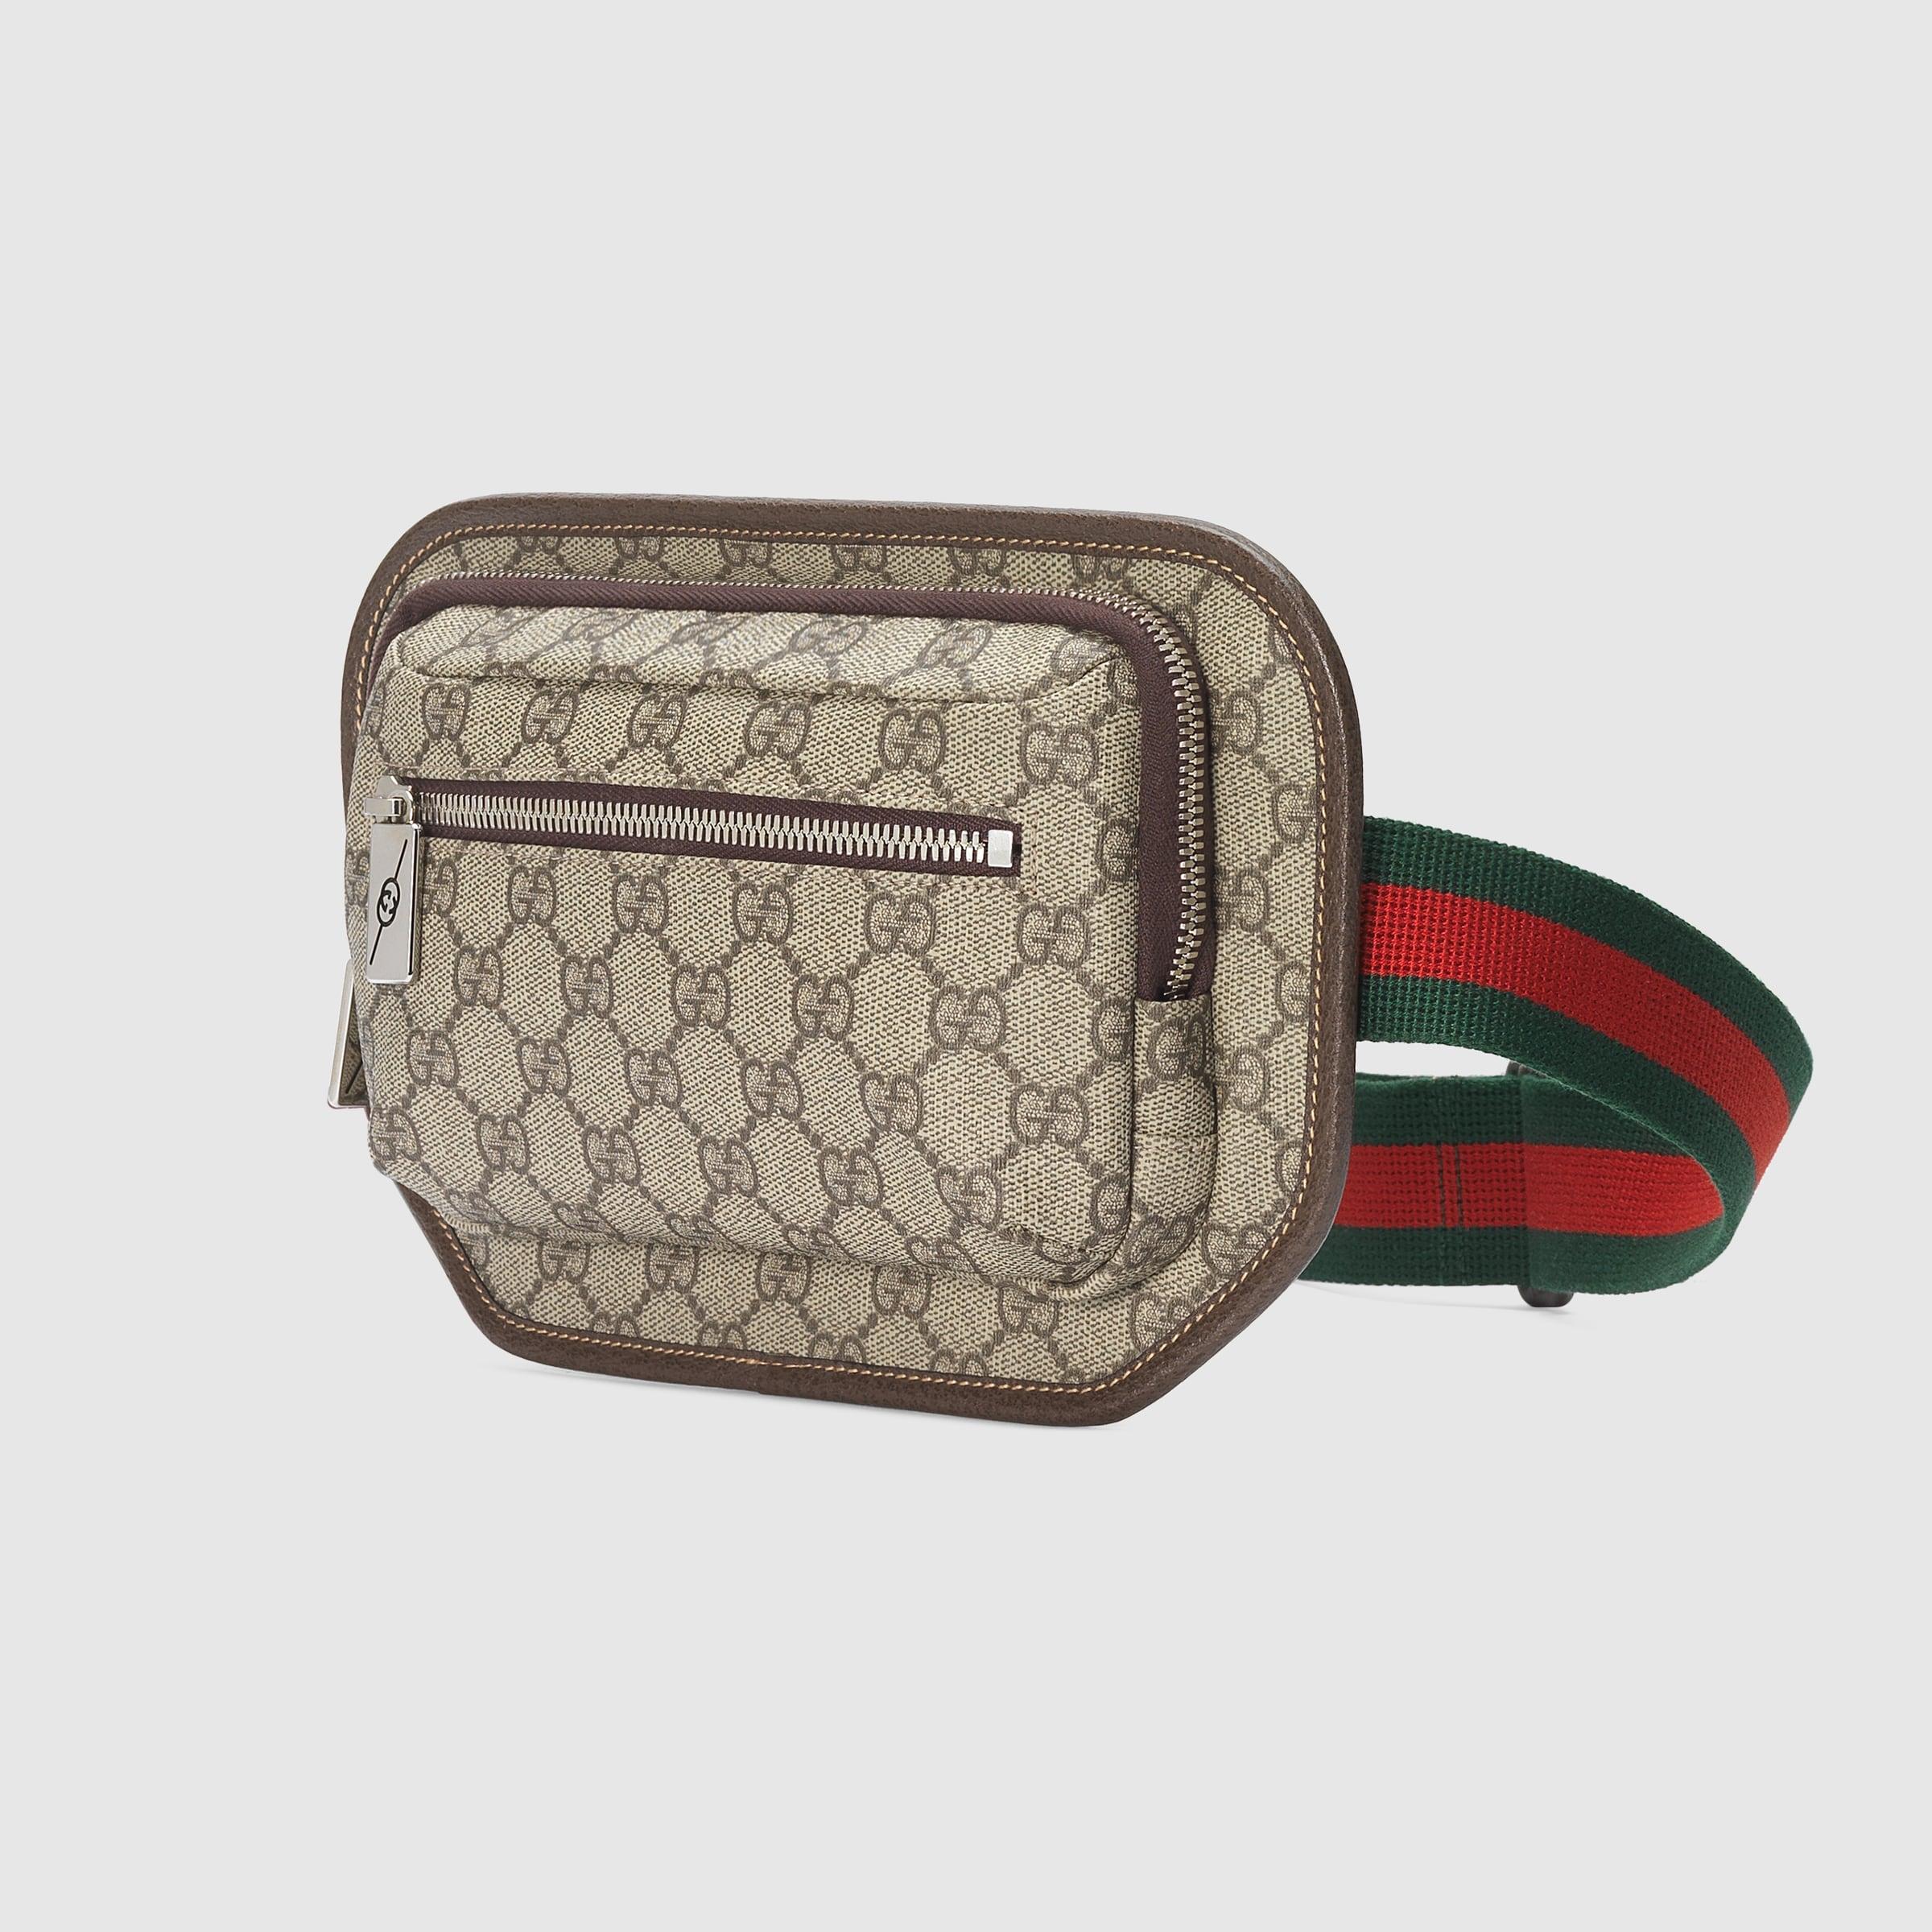 Gucci - Jumbo GG Belt Bag - Men - Canvas - 90 - Neutrals